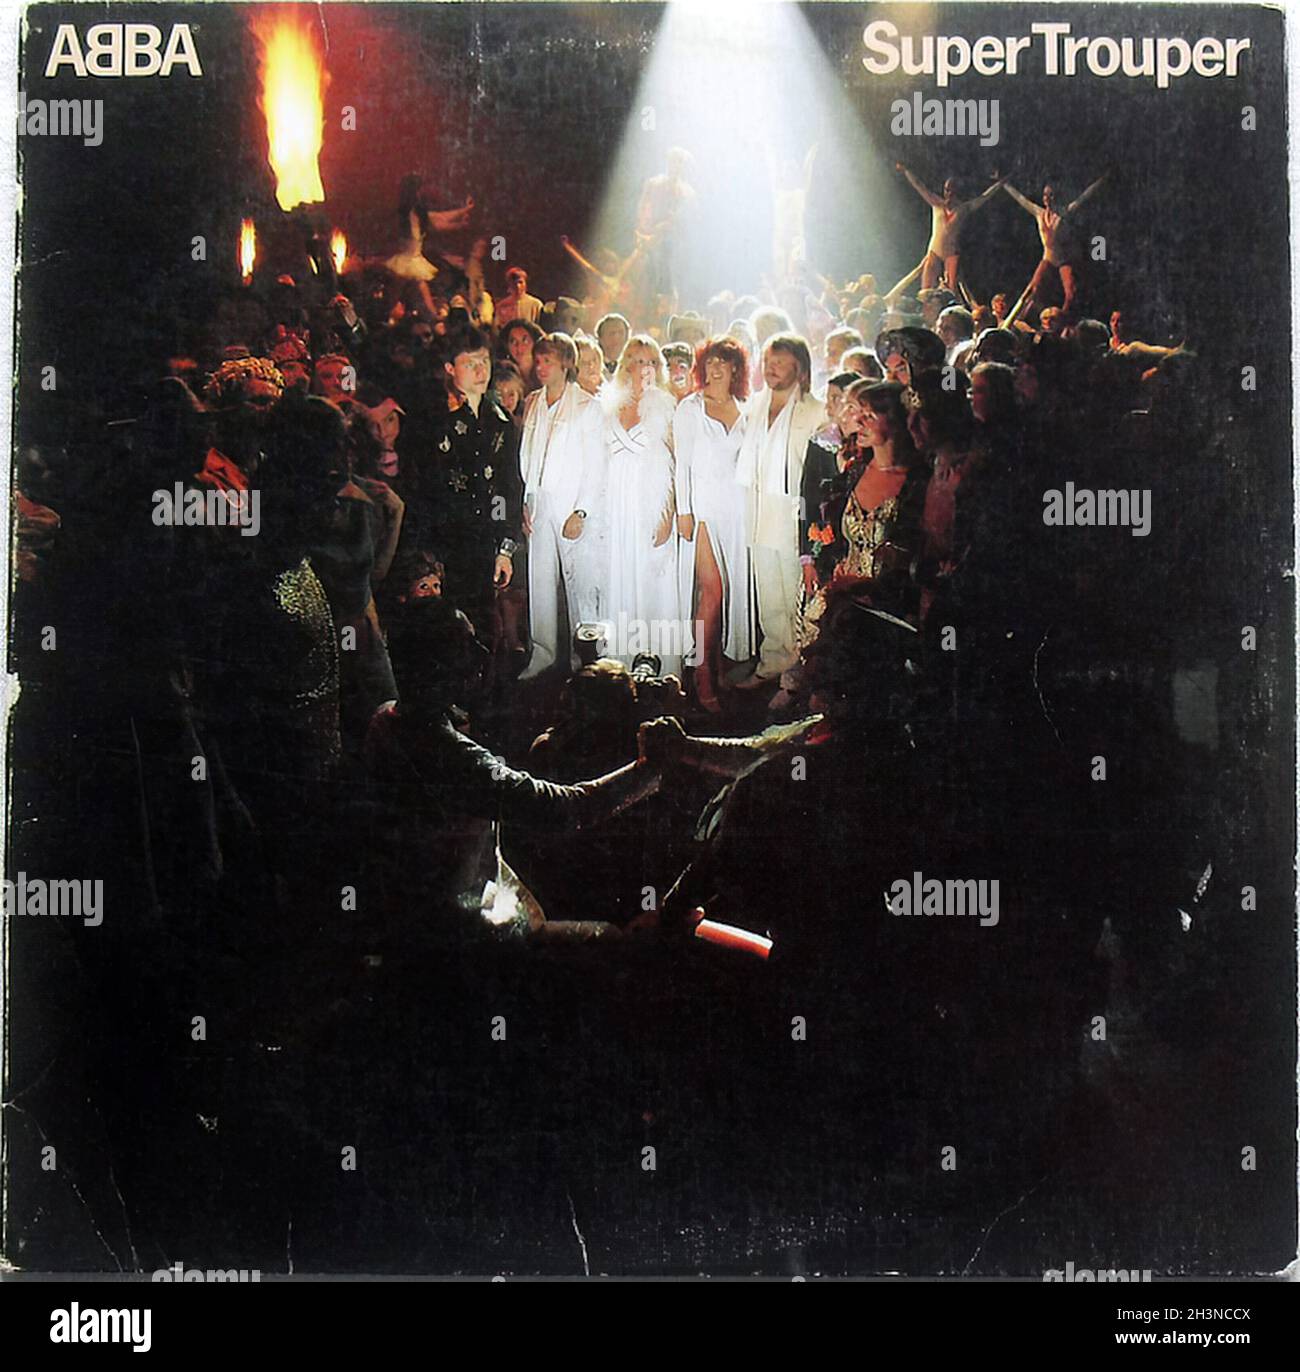 Super Trouper Abba Album Cover Stockfotografie - Alamy